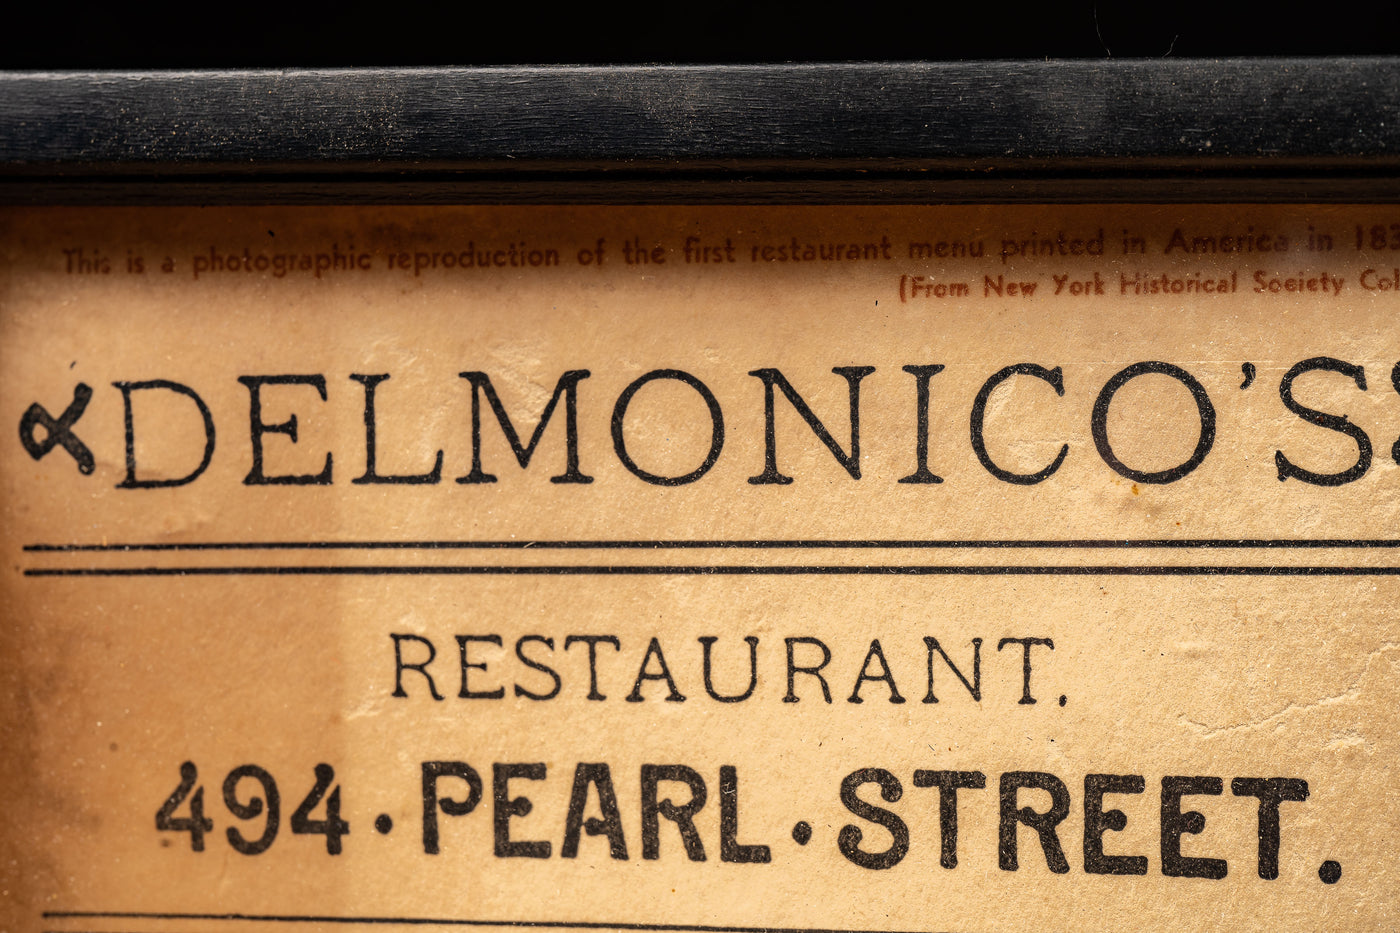 c. 1958 Delmonico's Reproduction Menu